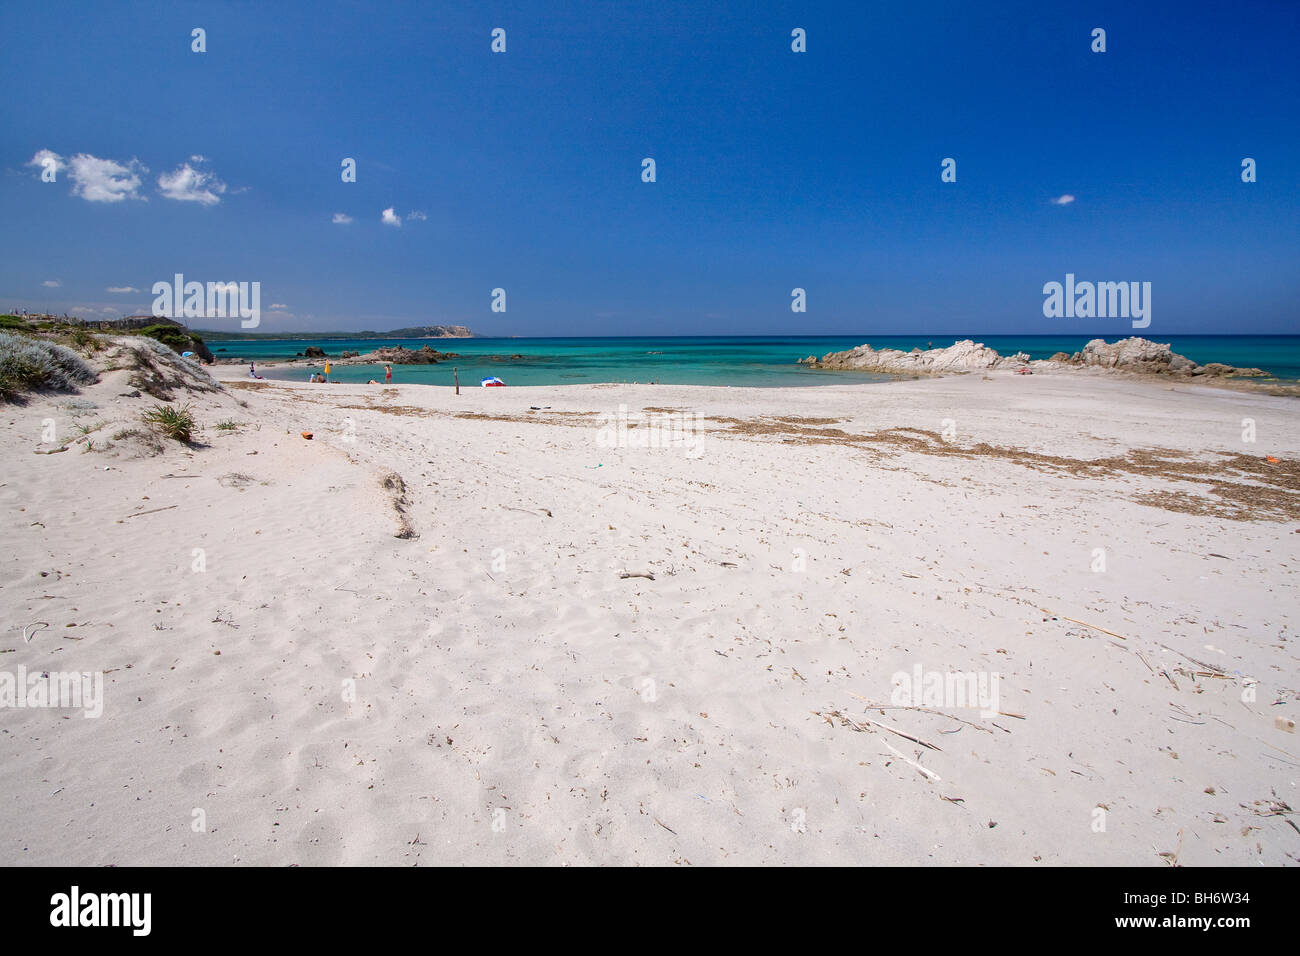 Dans l'eau bleue claire Rena Maiore plage, mer Méditerranée. La Sardaigne, Italie Banque D'Images